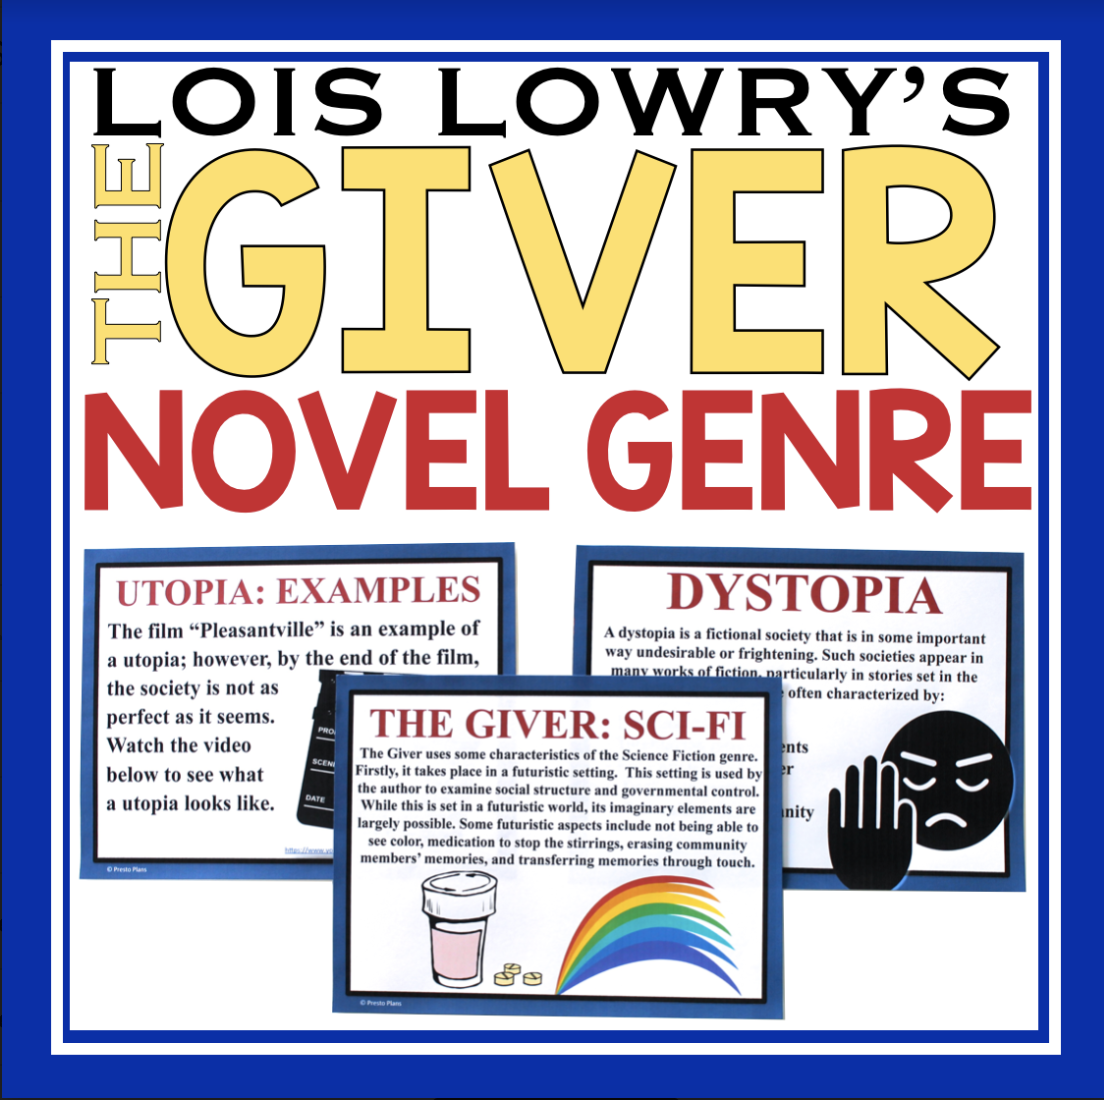 giver novel genre